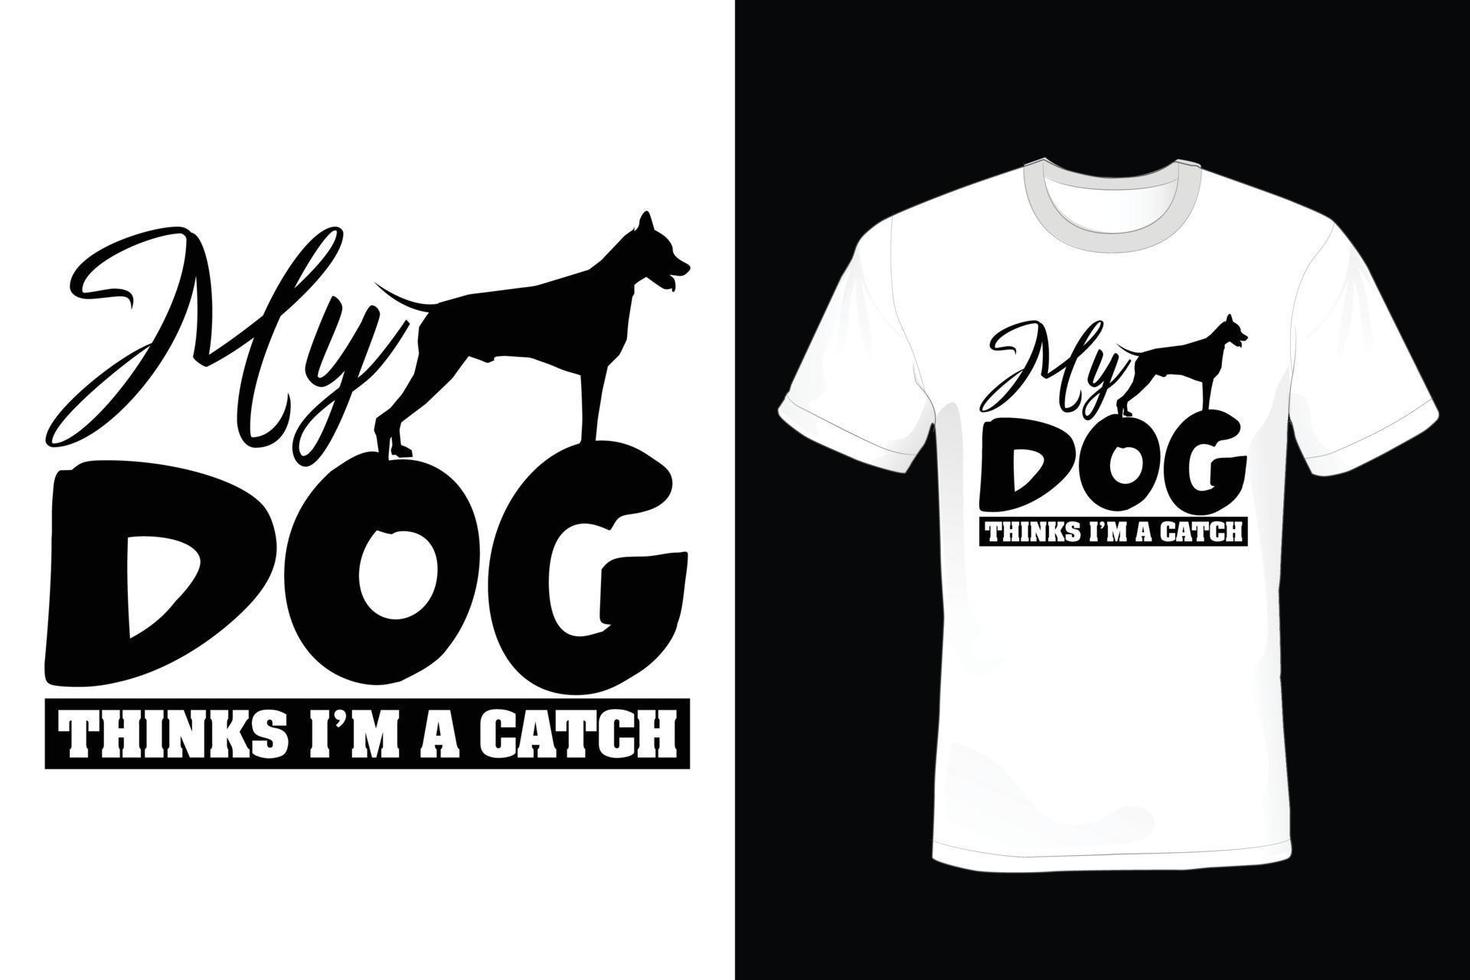 design de camiseta de cachorro, vintage, tipografia vetor